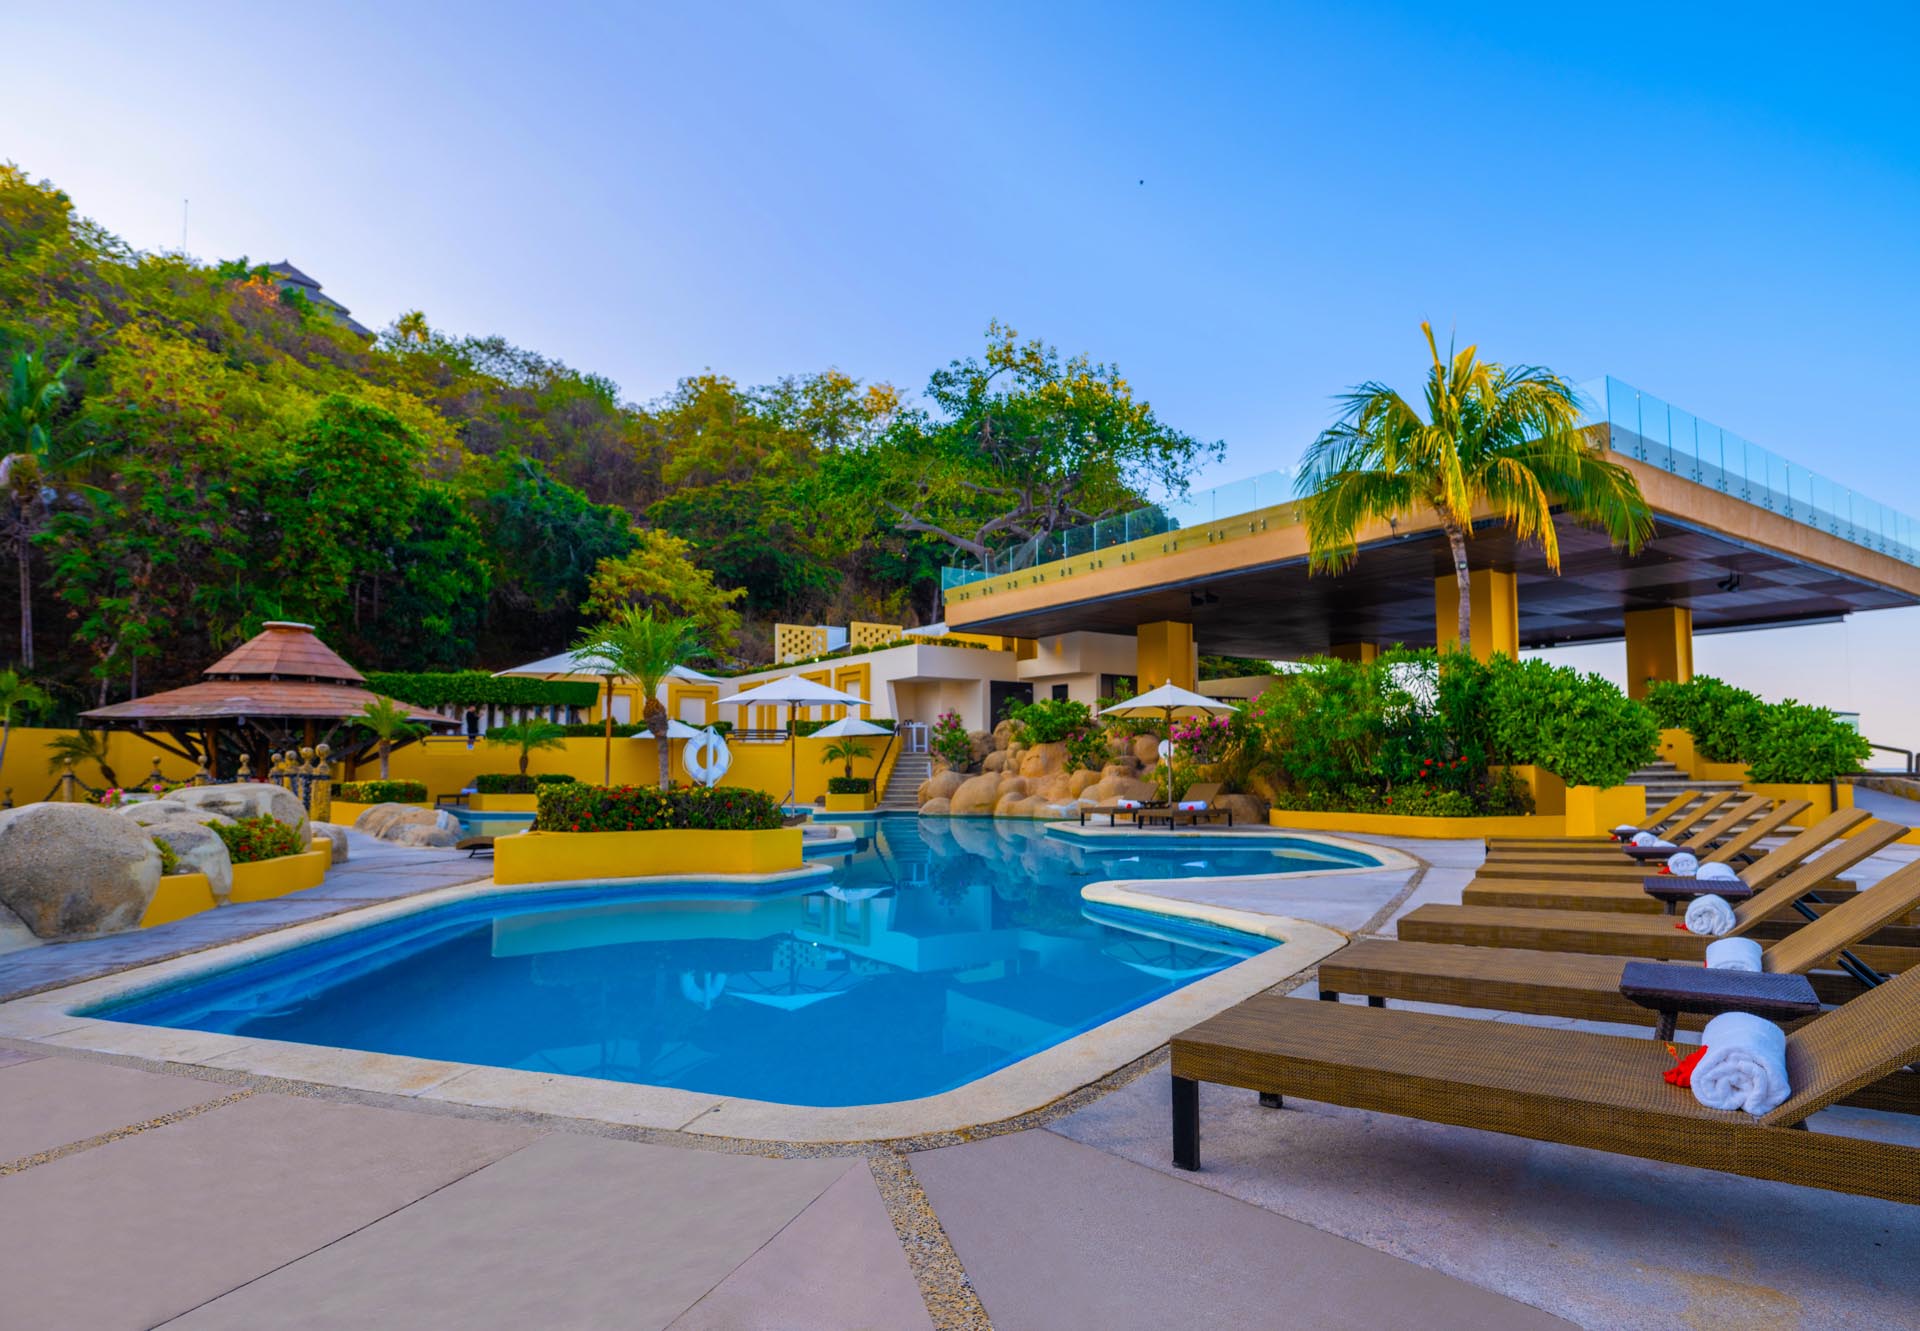 Las Brisas Acapulco pool